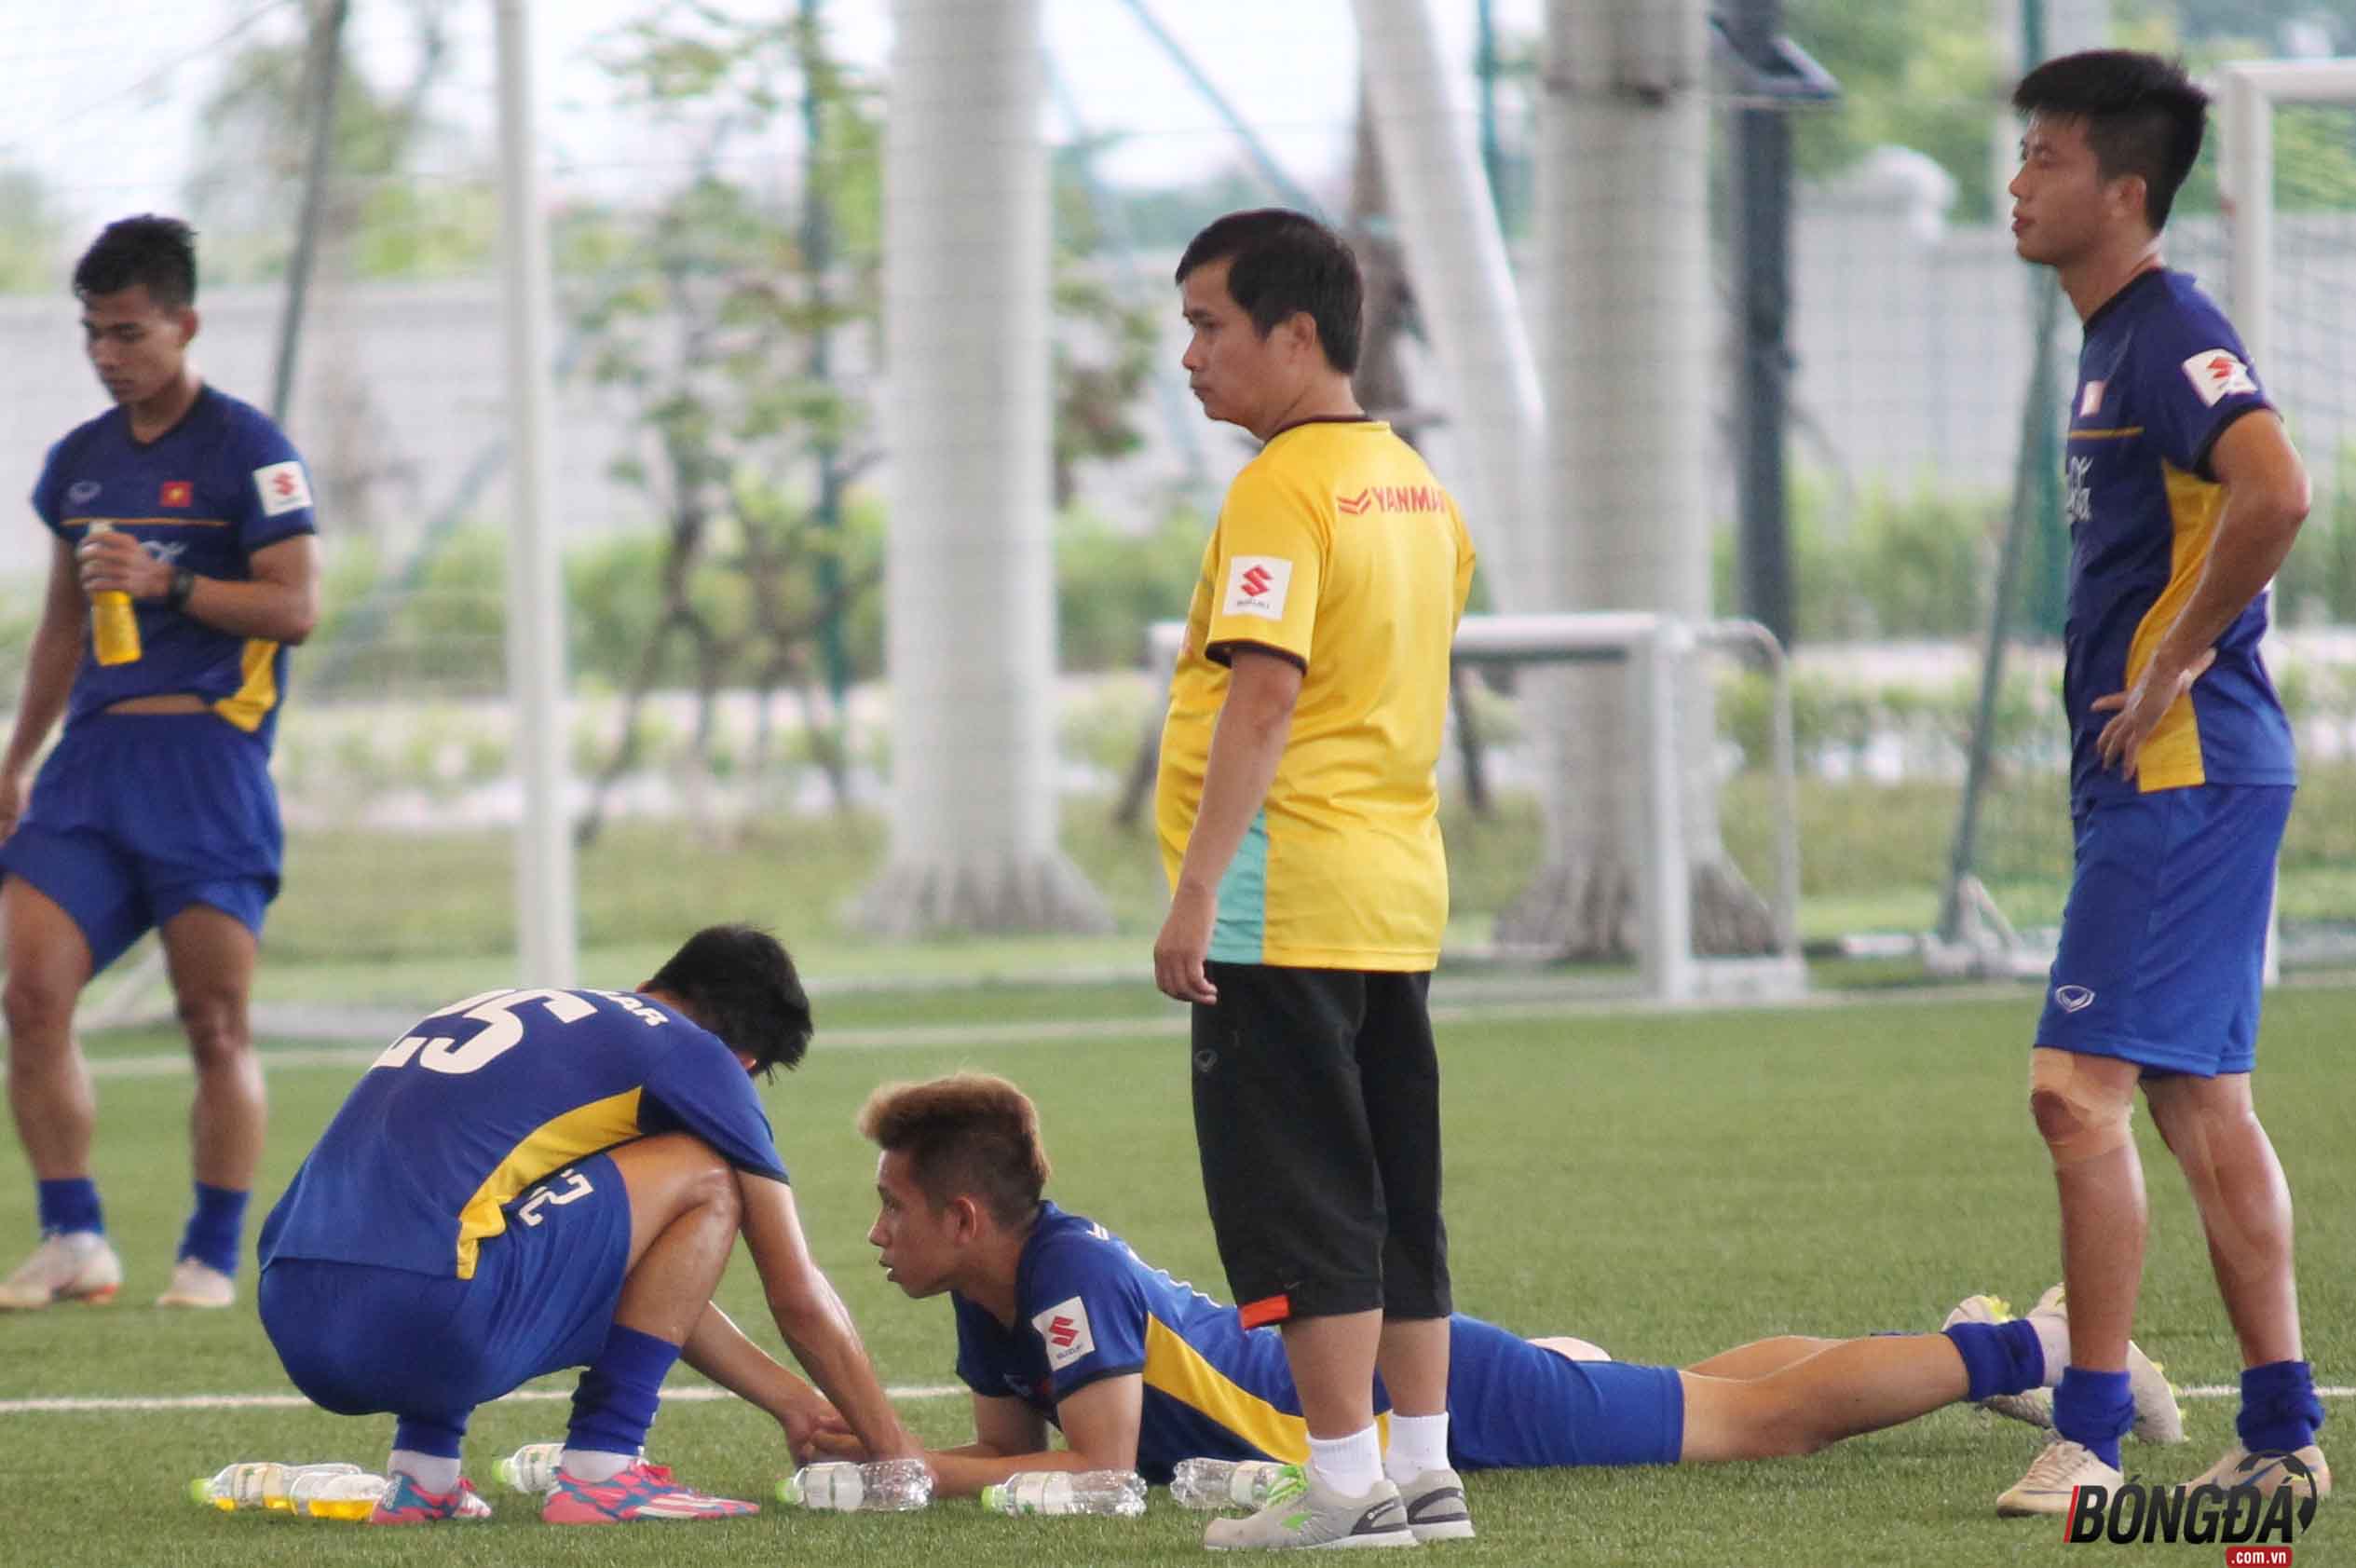 Hồng Duy gặp chấn thương trong buổi tập quan trọng của U23 Việt Nam - Bóng Đá